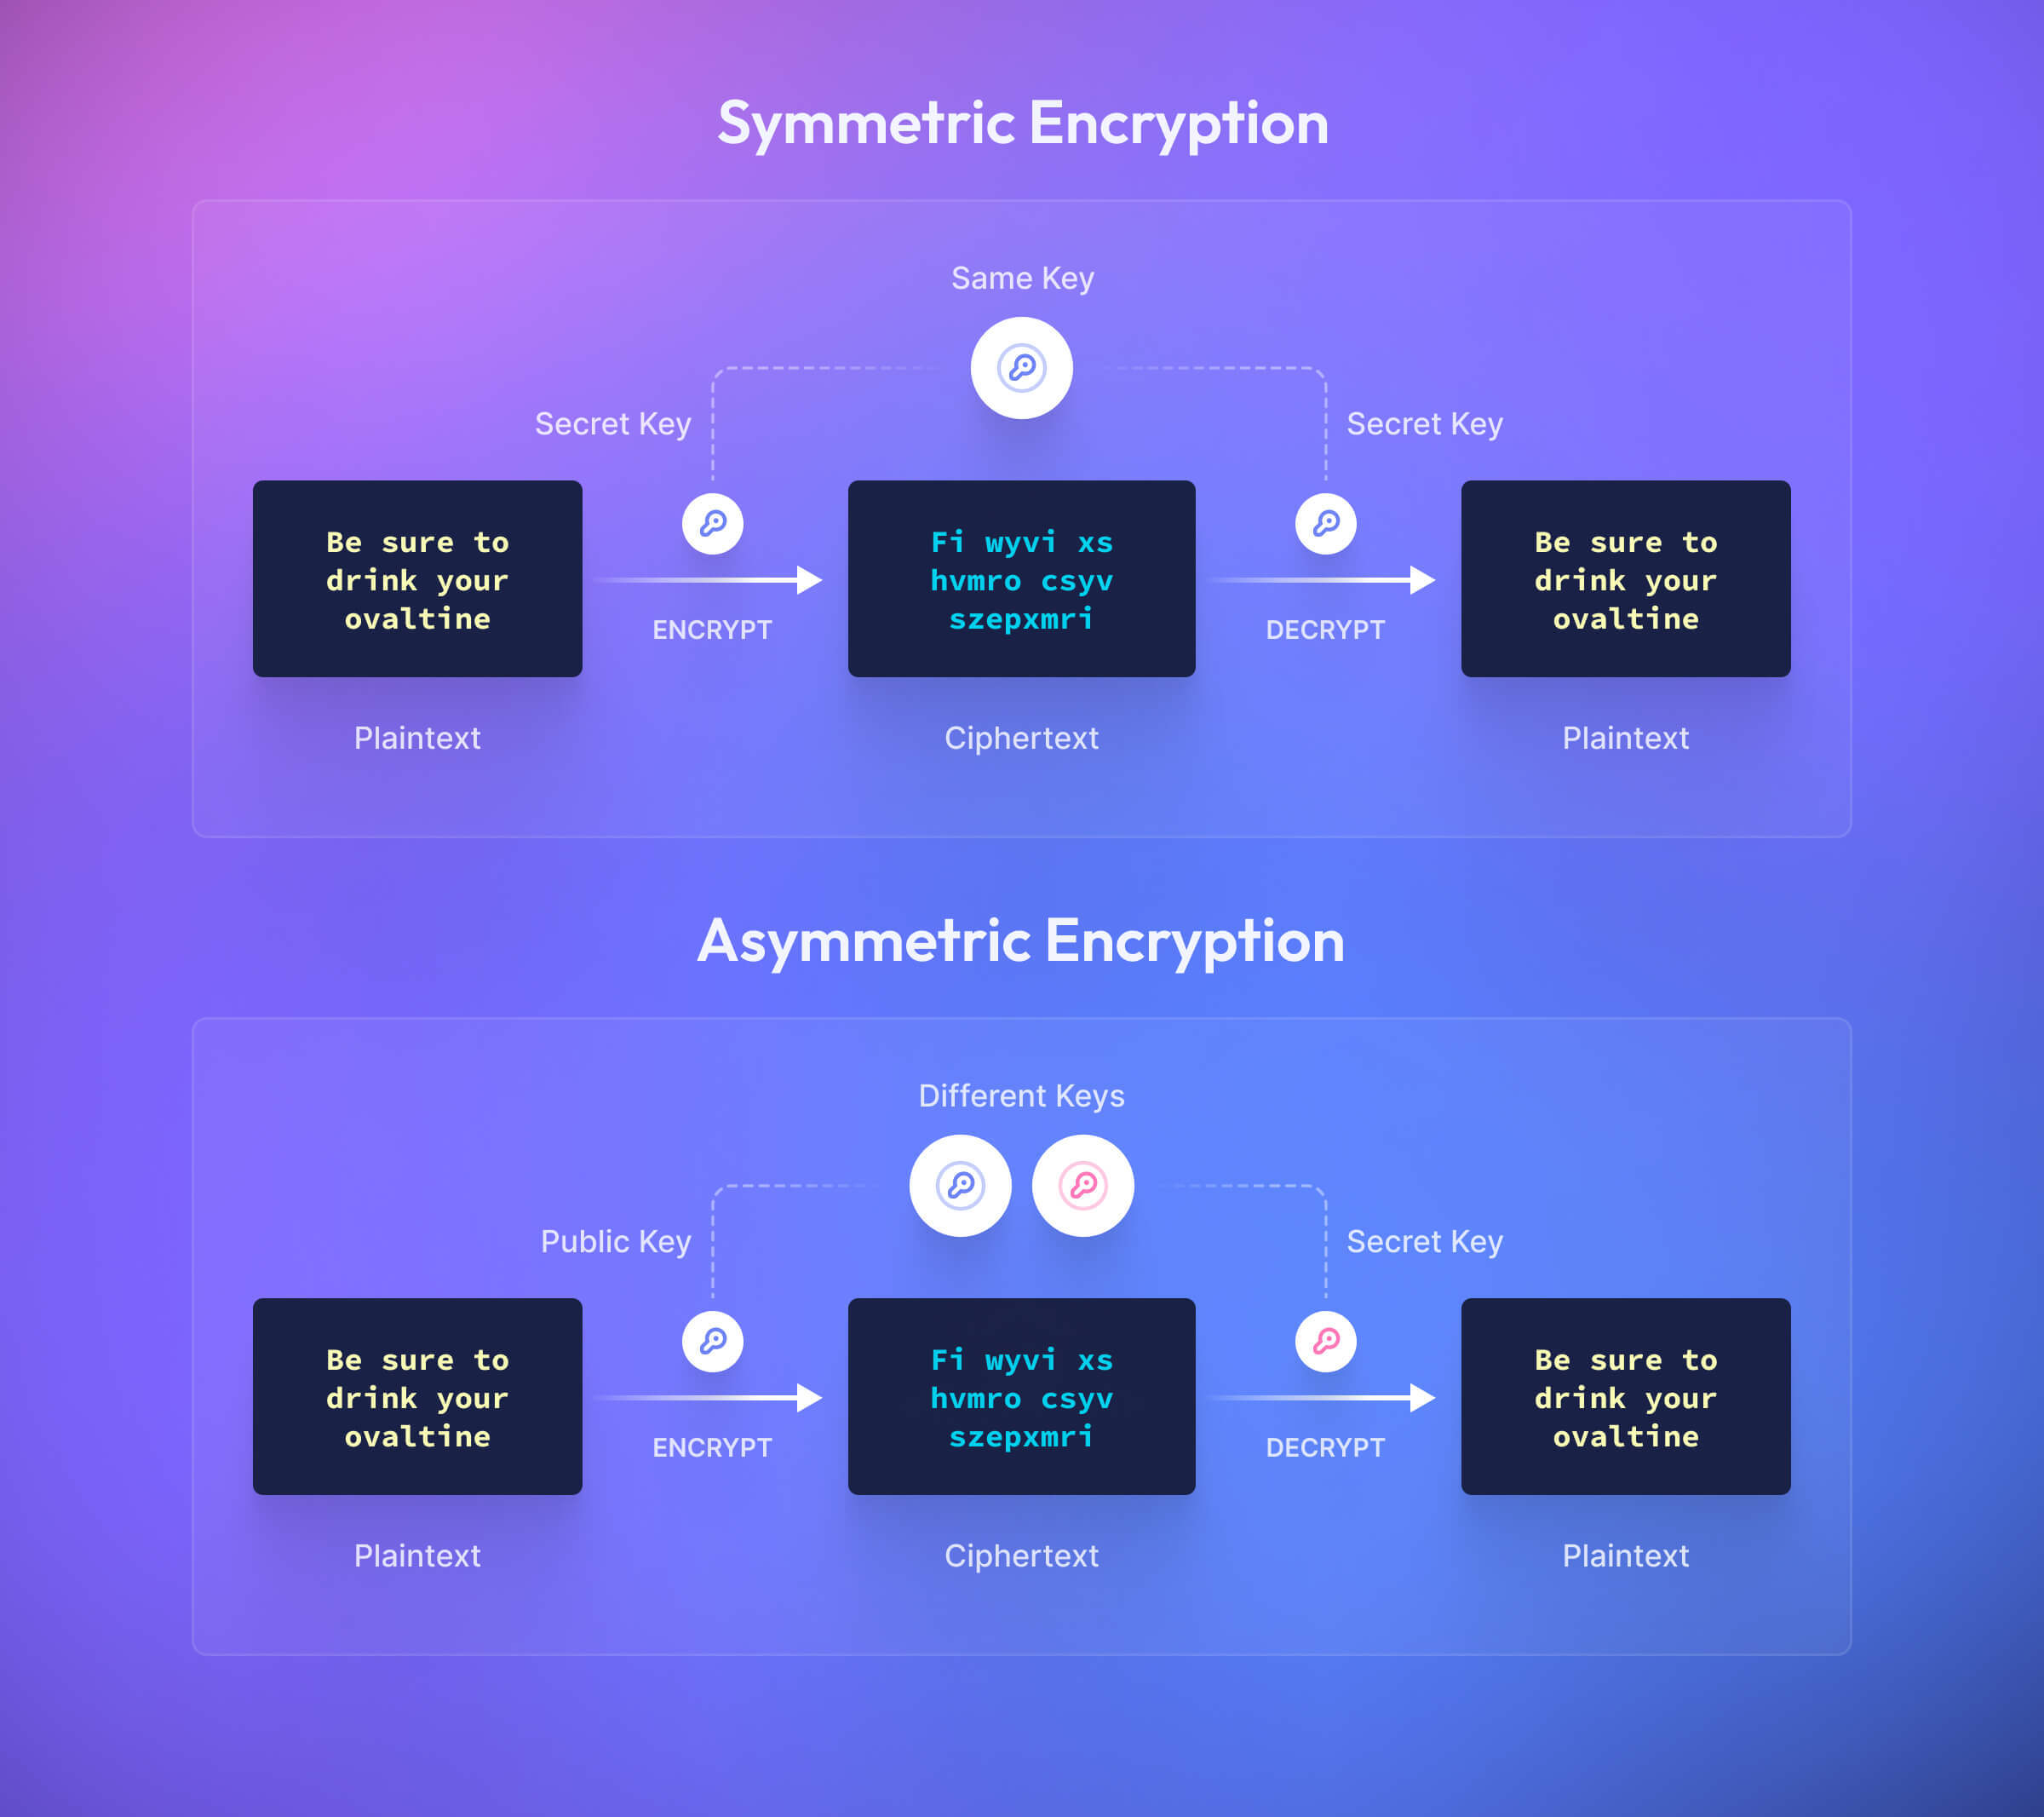 Symmetric encryption uses the same encryption key to encrypt and decrypt while asymmetric uses a public key to encrypt and a private key to decrypt